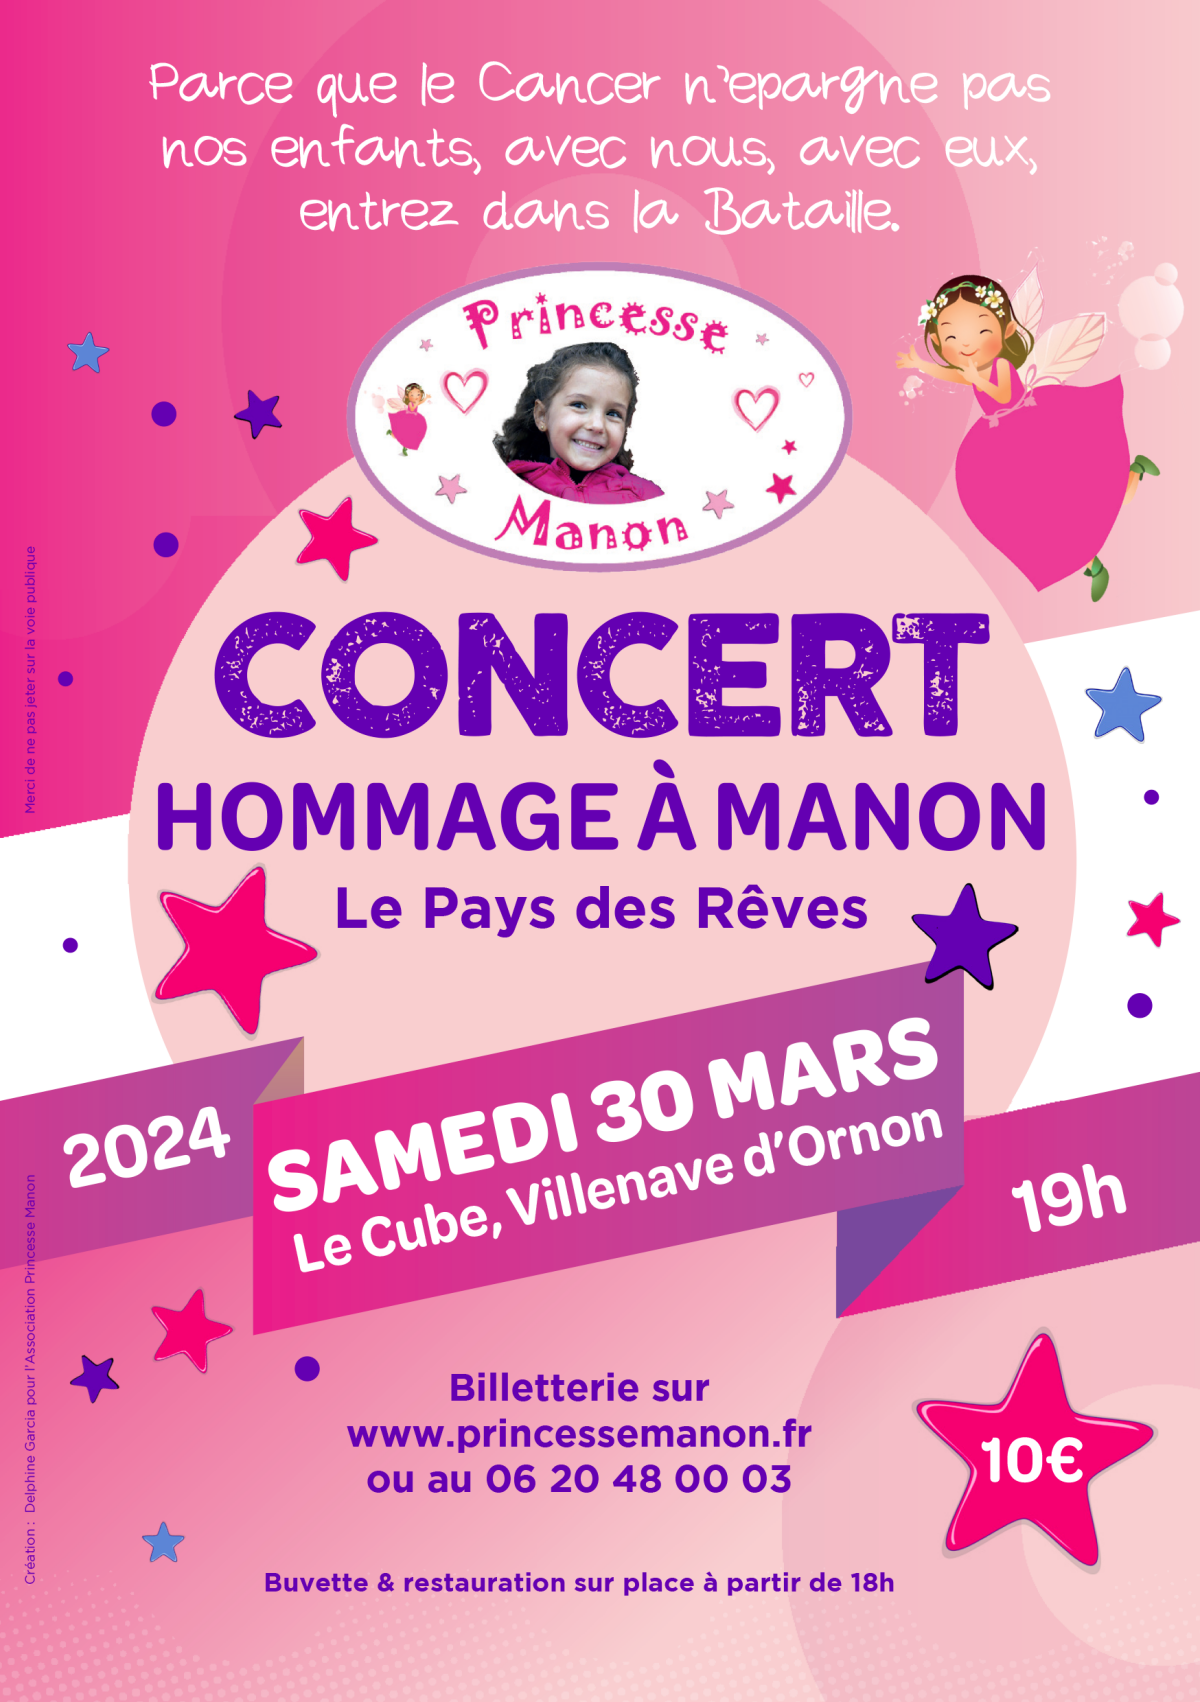 Le prochain événement de l'association Princesse Manon